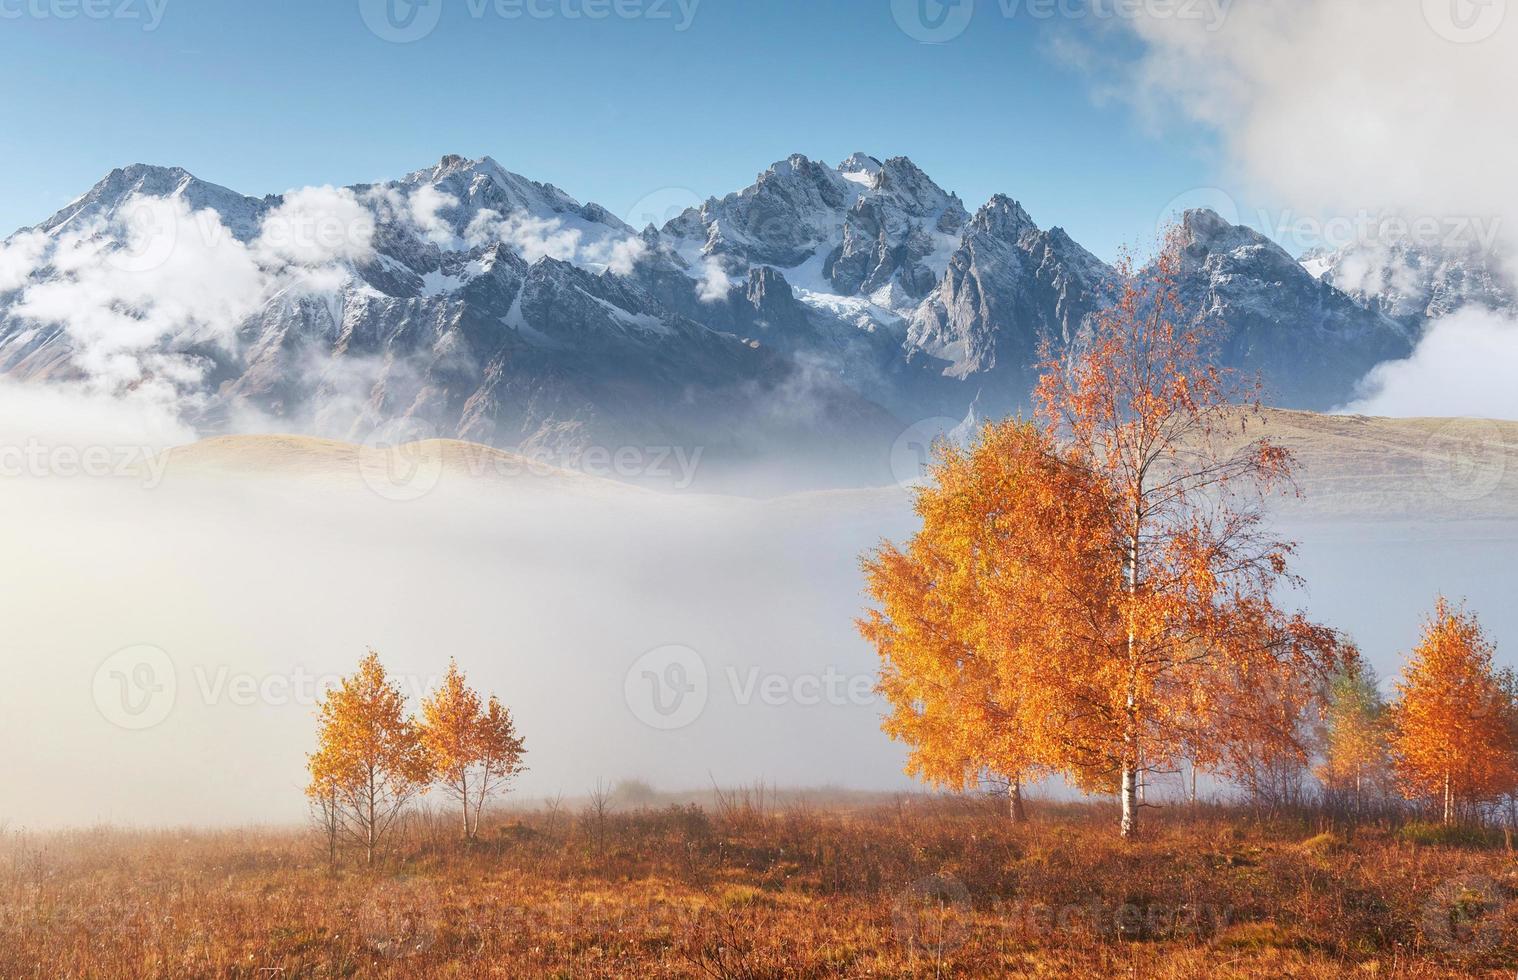 albero lucido su un pendio collinare con travi soleggiate nella valle di montagna ricoperta di nebbia. splendida scena mattutina. foglie autunnali rosse e gialle. carpazi, ucraina, europa. scopri il mondo della bellezza foto